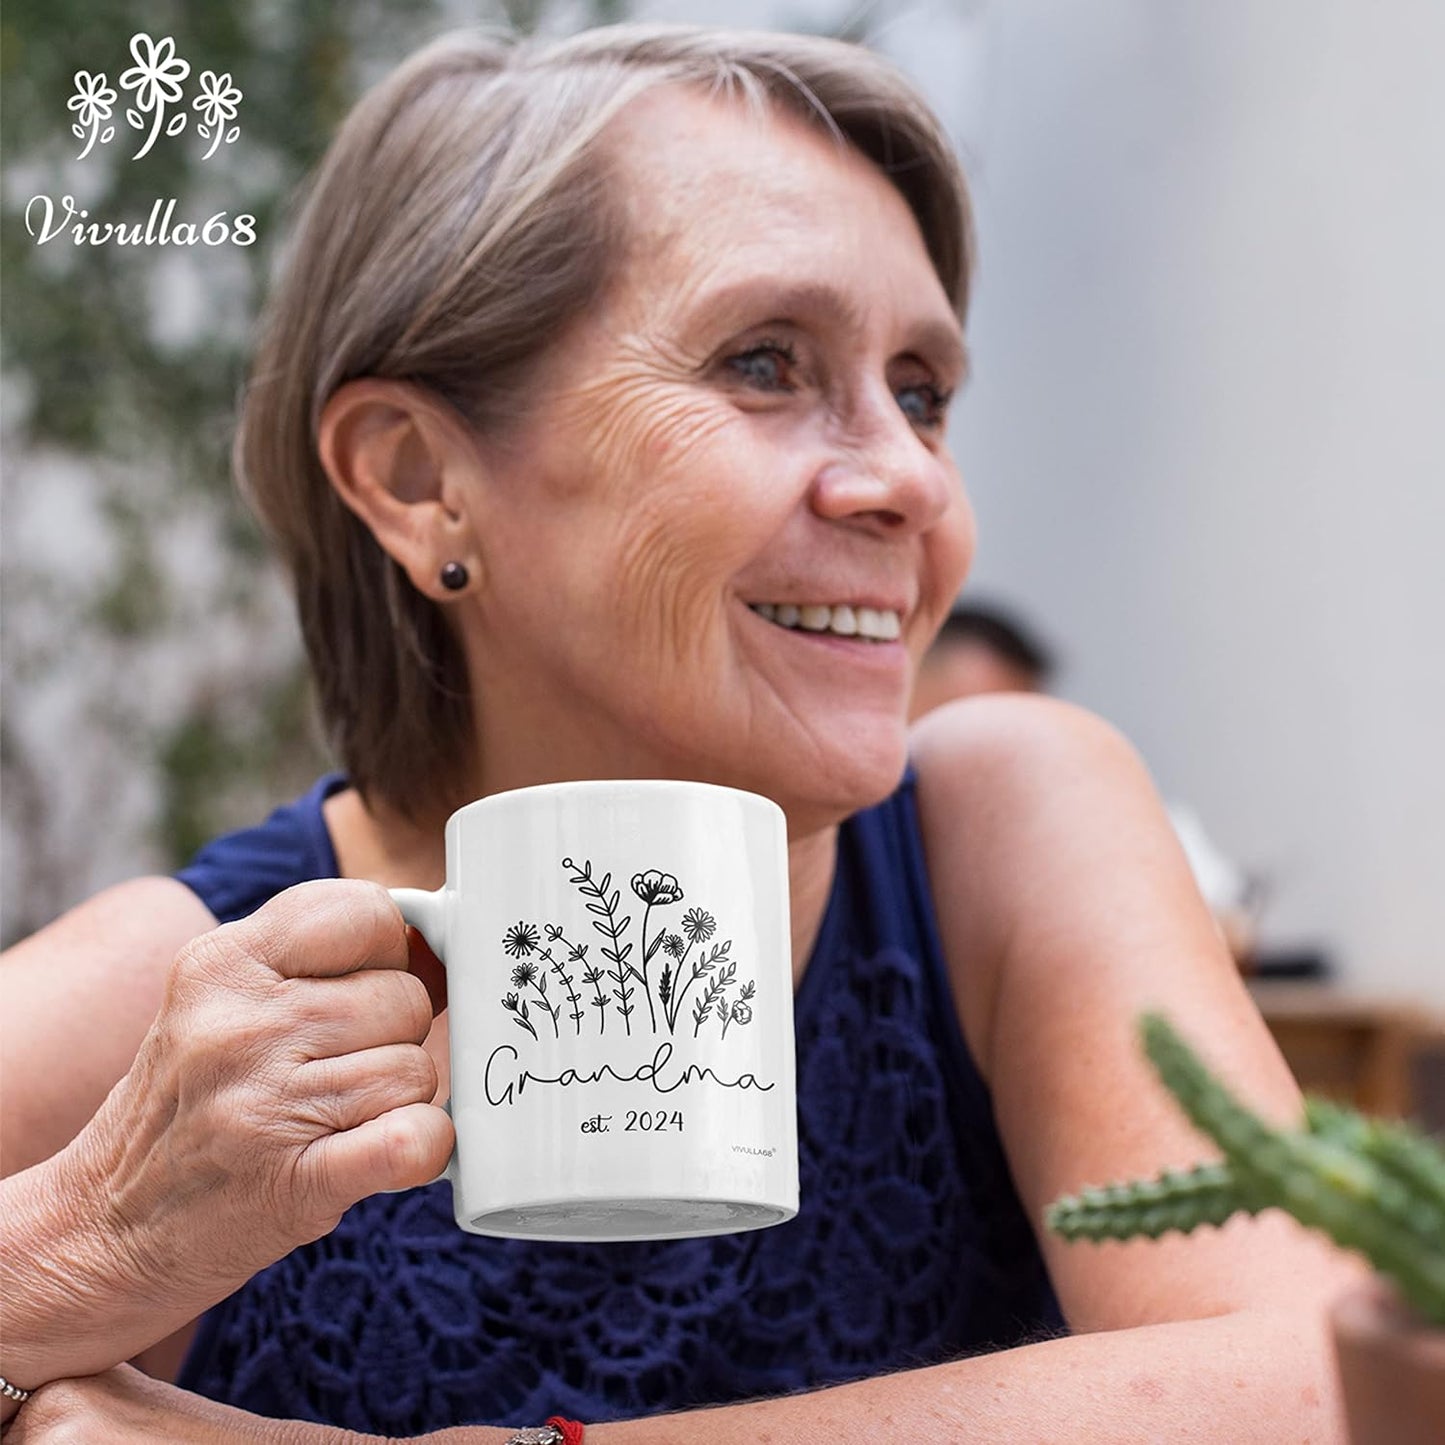 Promoted To Grandma 2024 Mug, Promoted To Grandma Mug, New Grandma Gifts First Time, Grandma Mugs Coffee Gift For New Grandma, Grandma To Be Gifts, Grandmother To Be Gifts, Gifts For Grandmother To Be